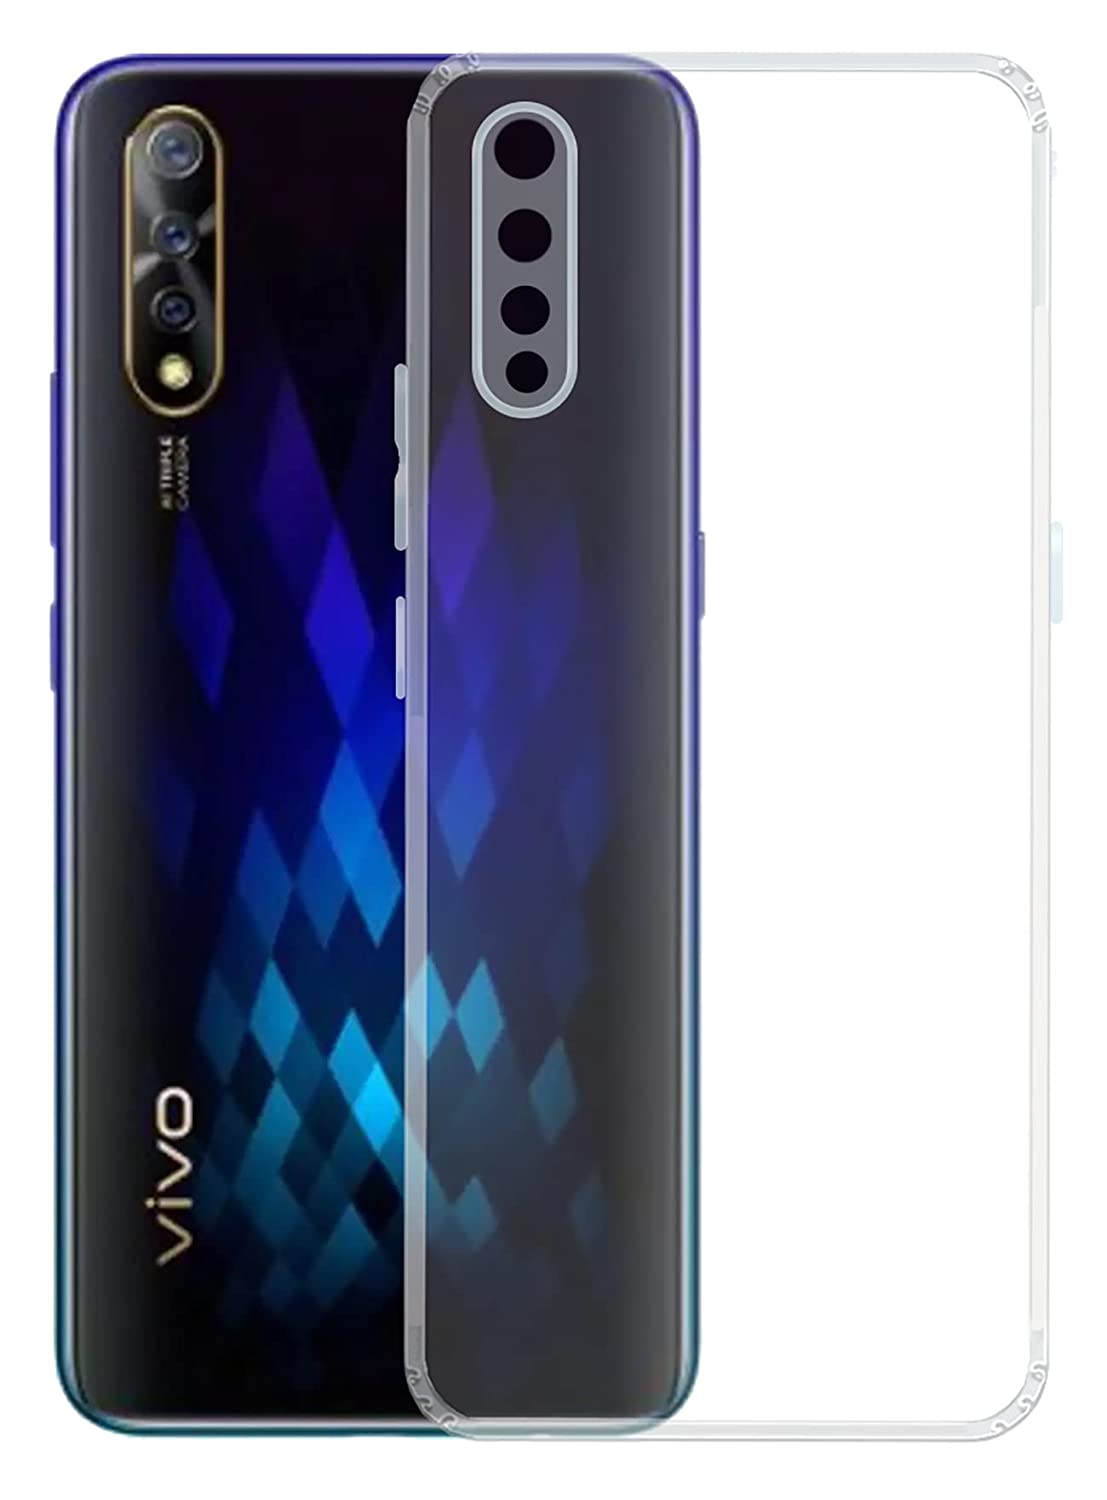 Vivo S1 Transparent Soft Silicone TPU Back Cover